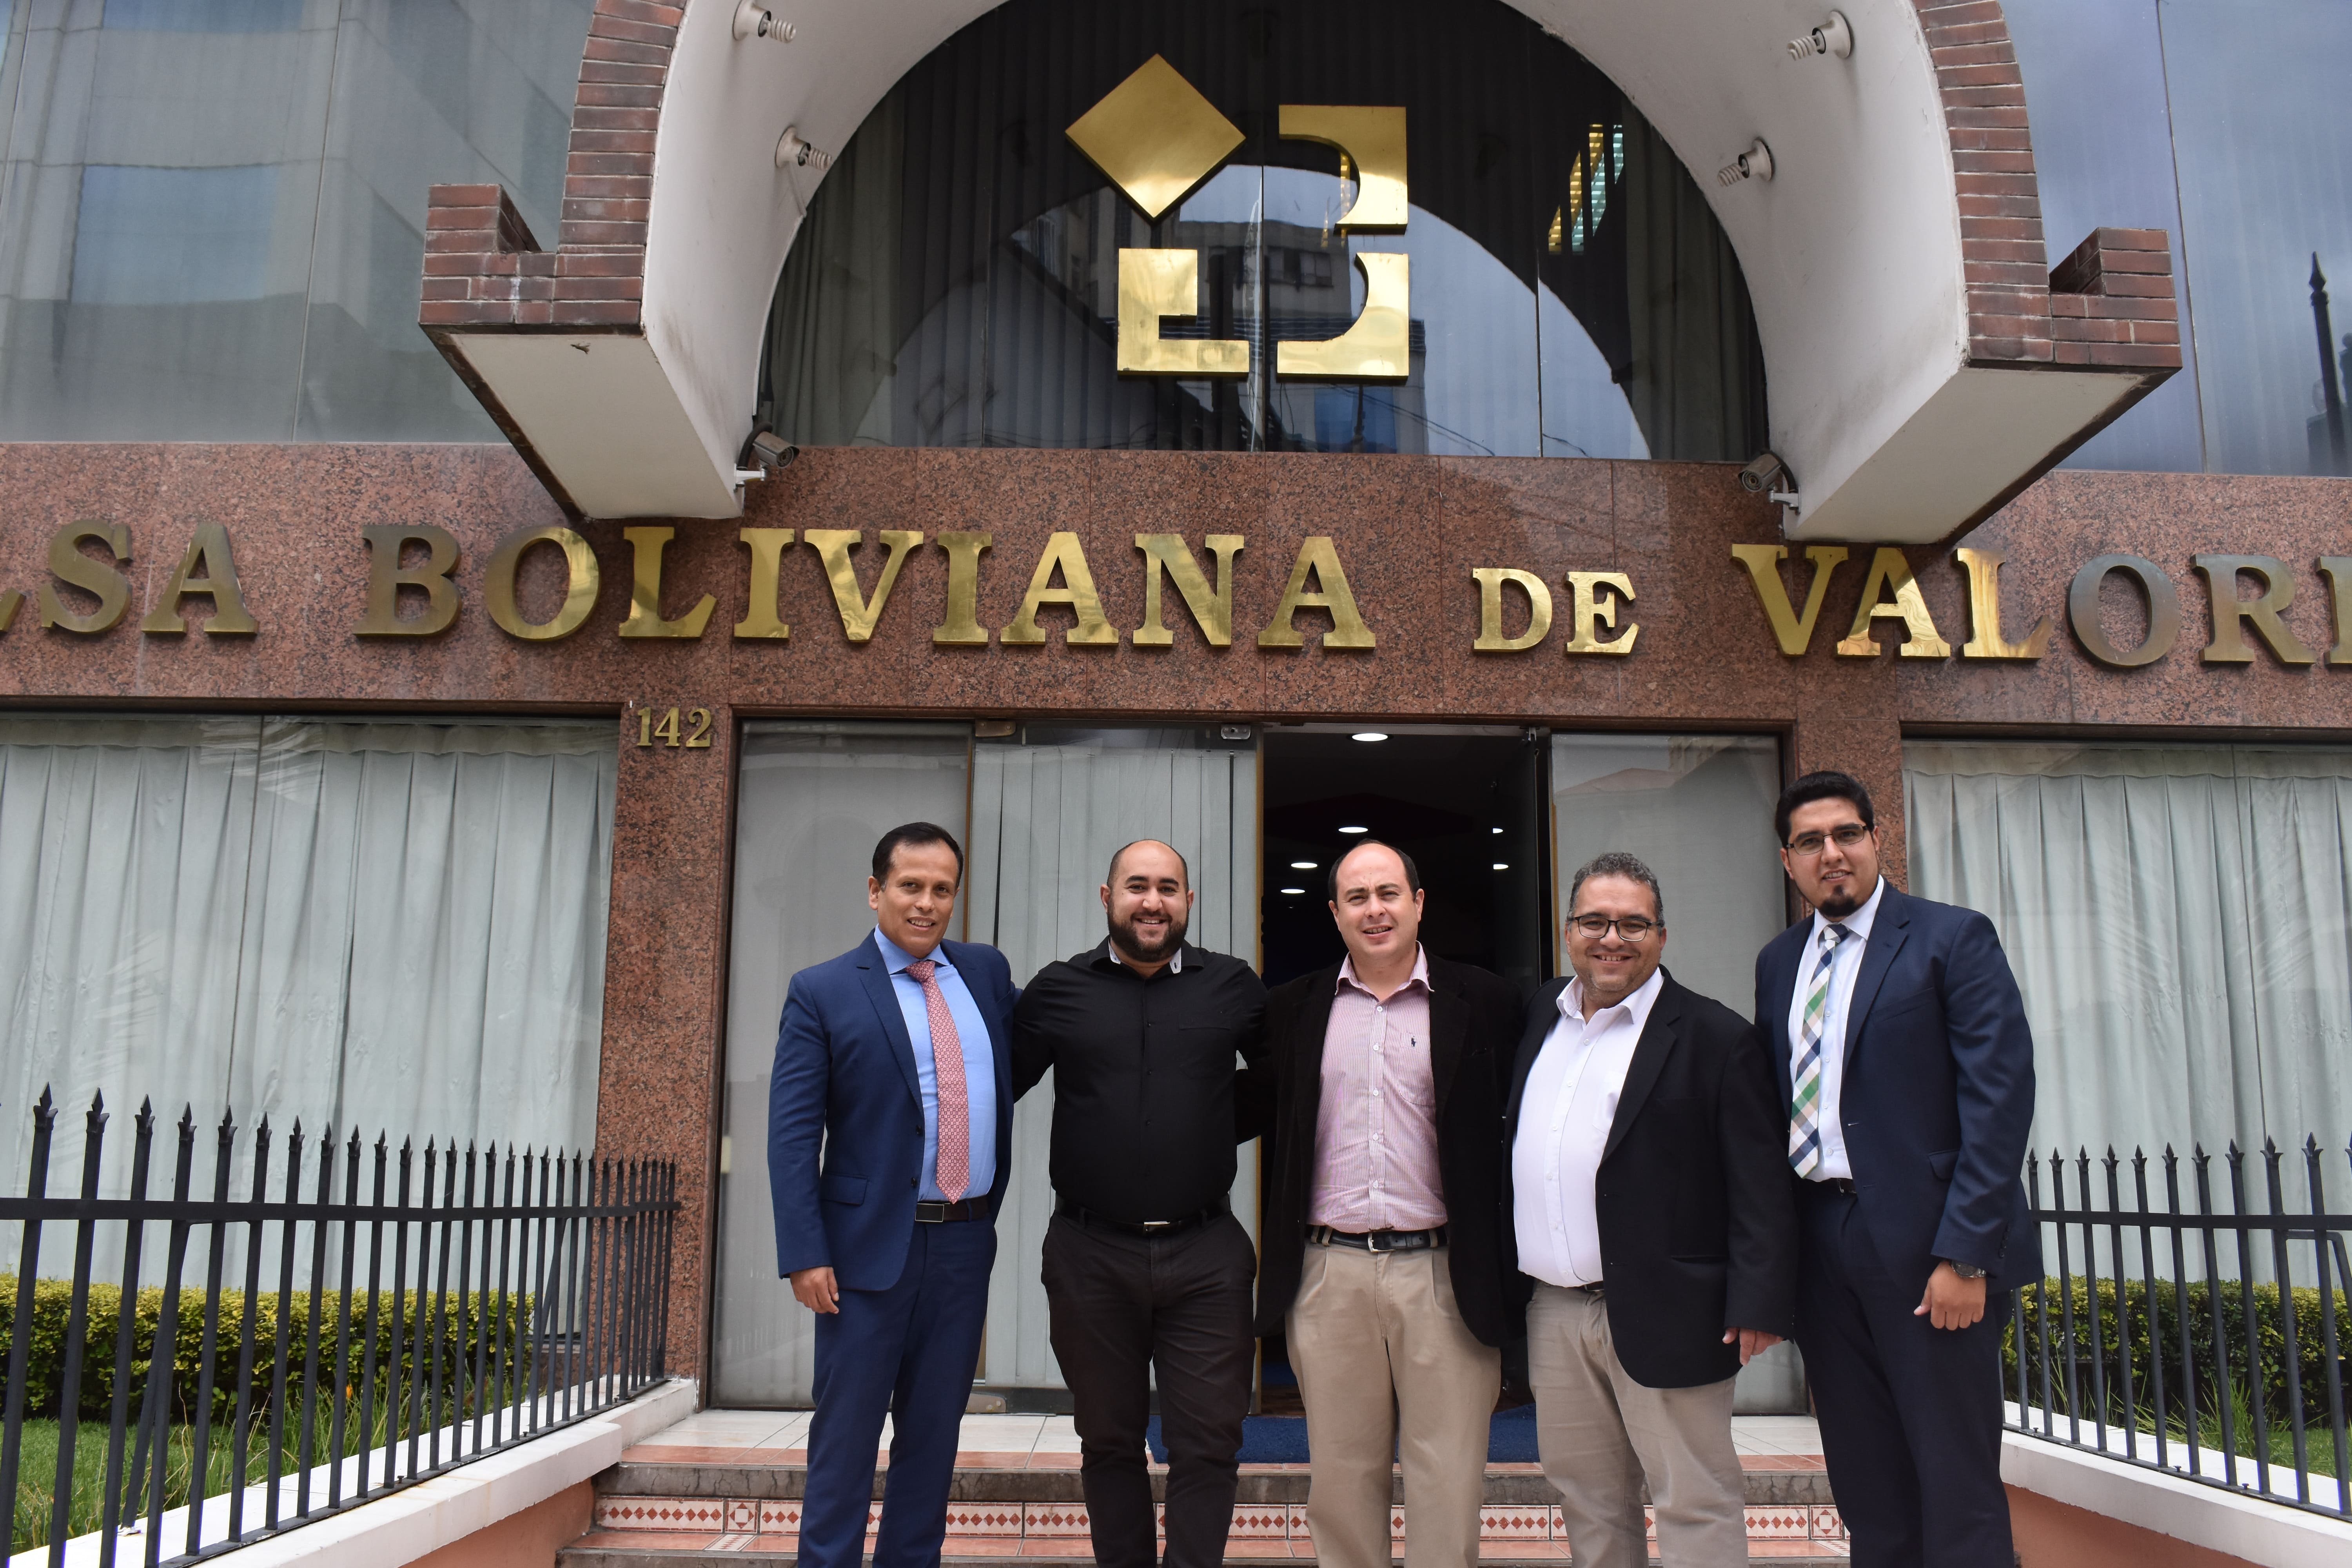 AMERICAN IRIS PAPER COMPANY S.A. ingresa al mercado de valores y recibe financiamiento por 97 millones de bolivianos   